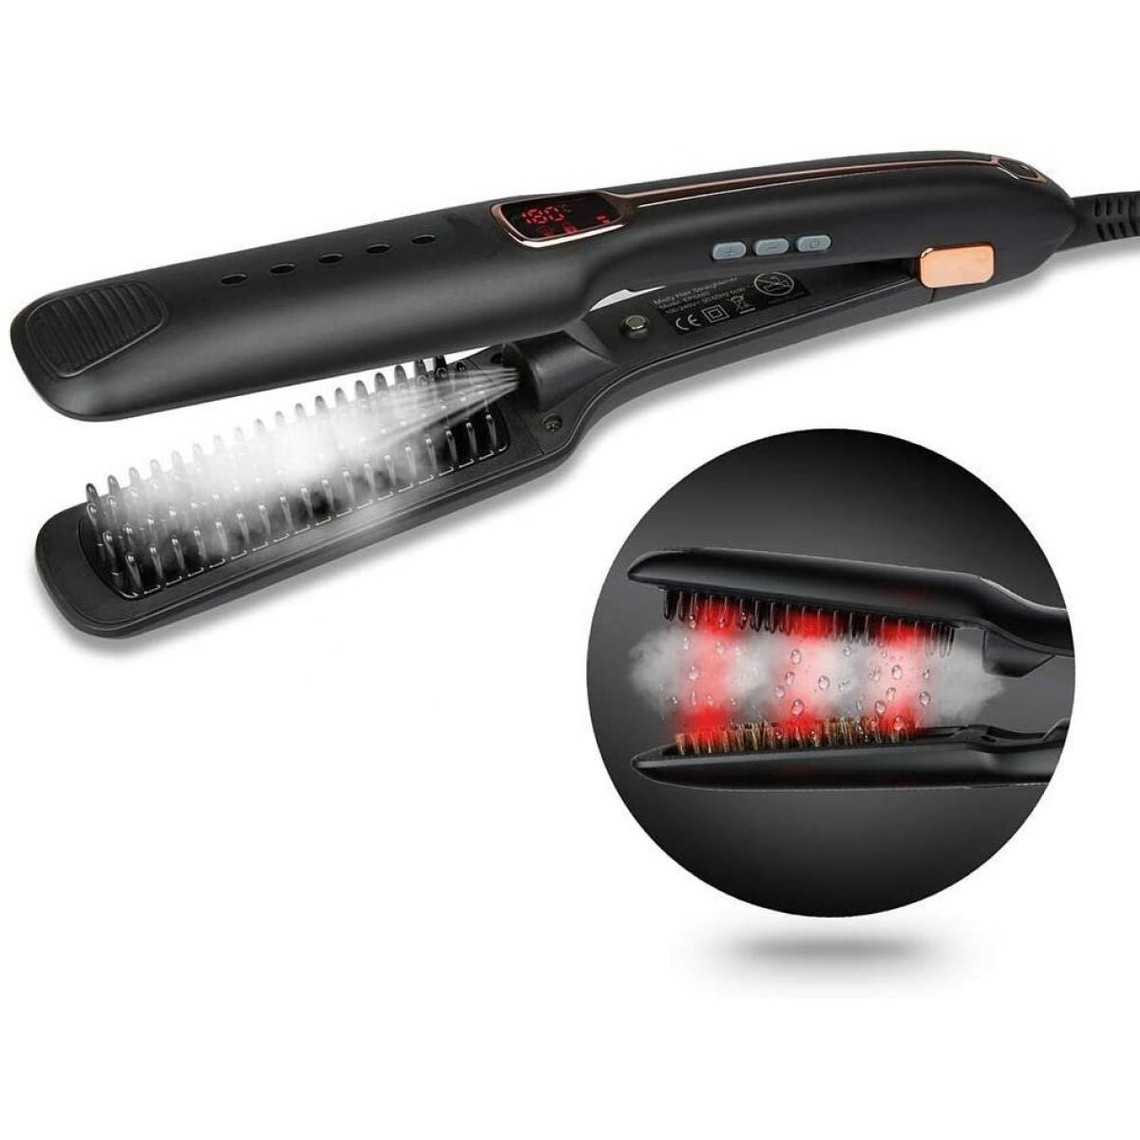 Chrono Brosse Lissante Chauffante,Fer à Lisser,Lisseur Vapeur Cheveux infrarouge avec écran LCD,crinière naturelle, température